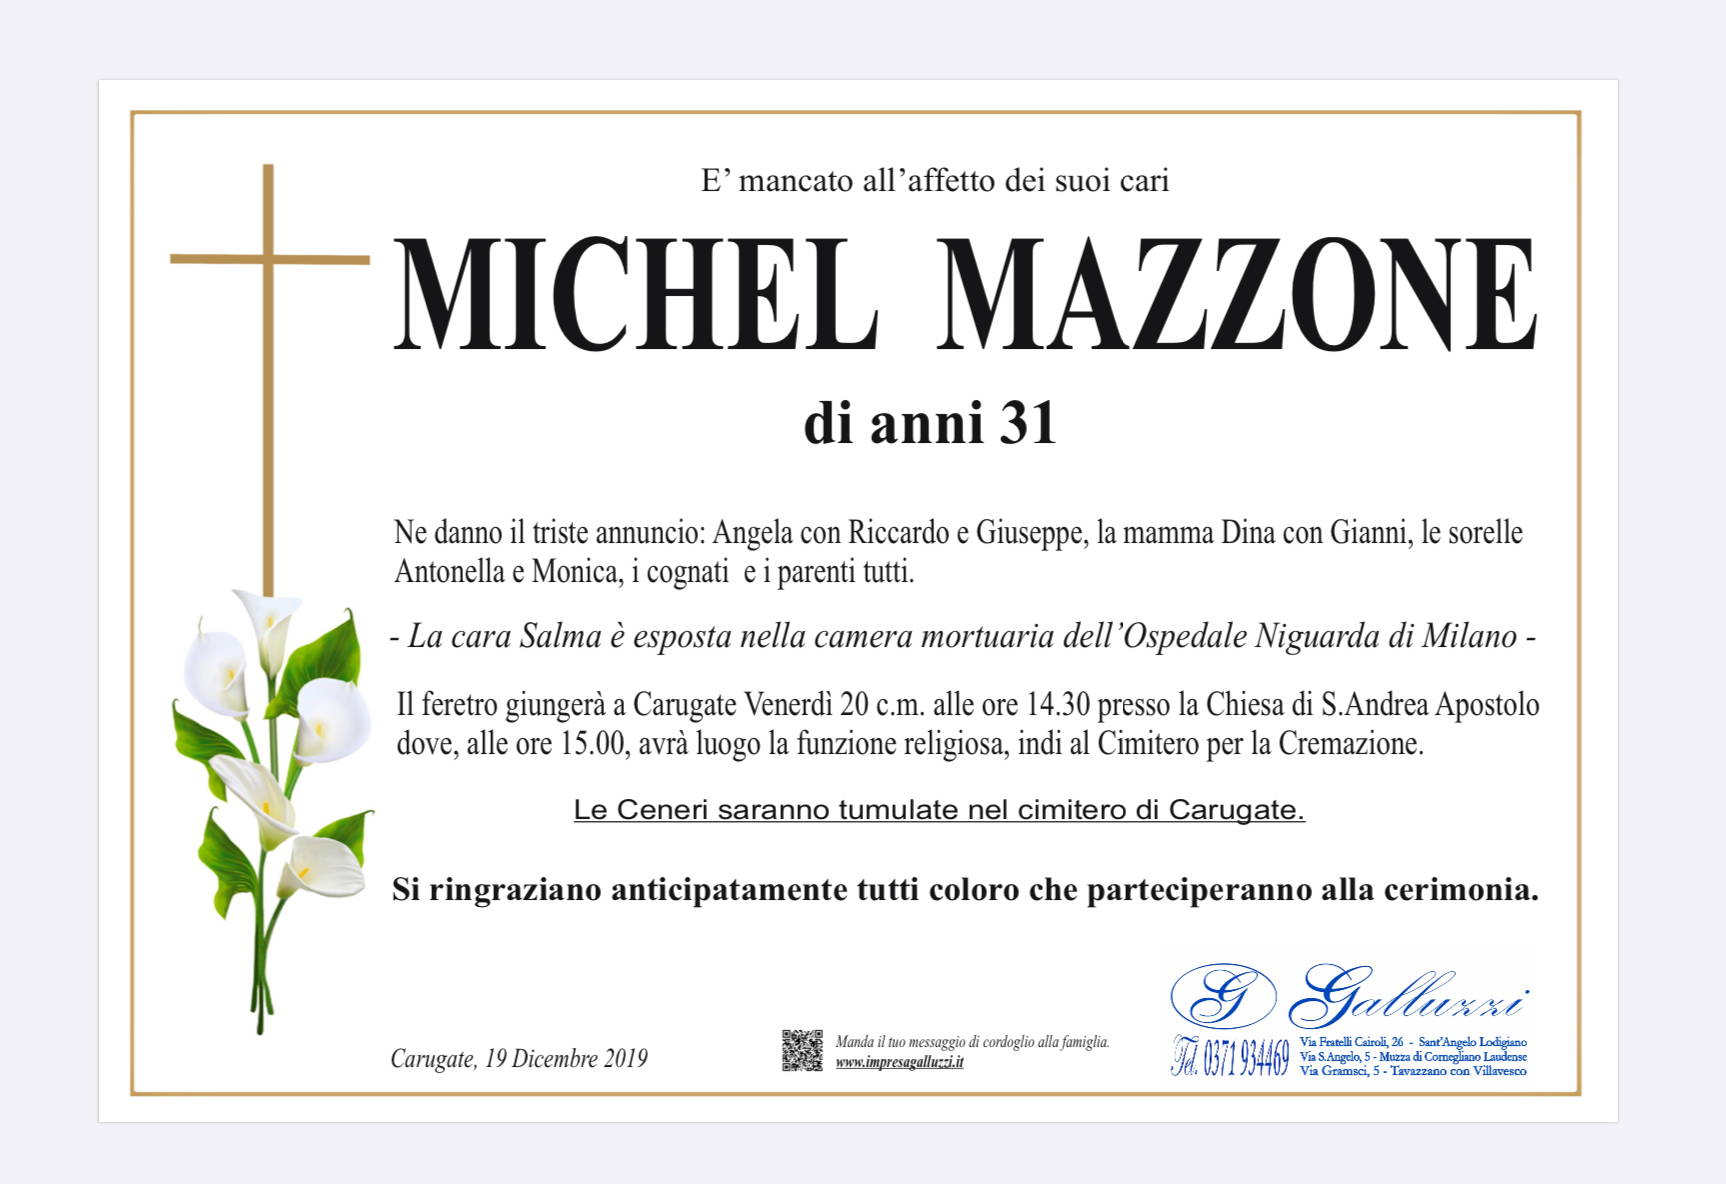 Michel Mazzone